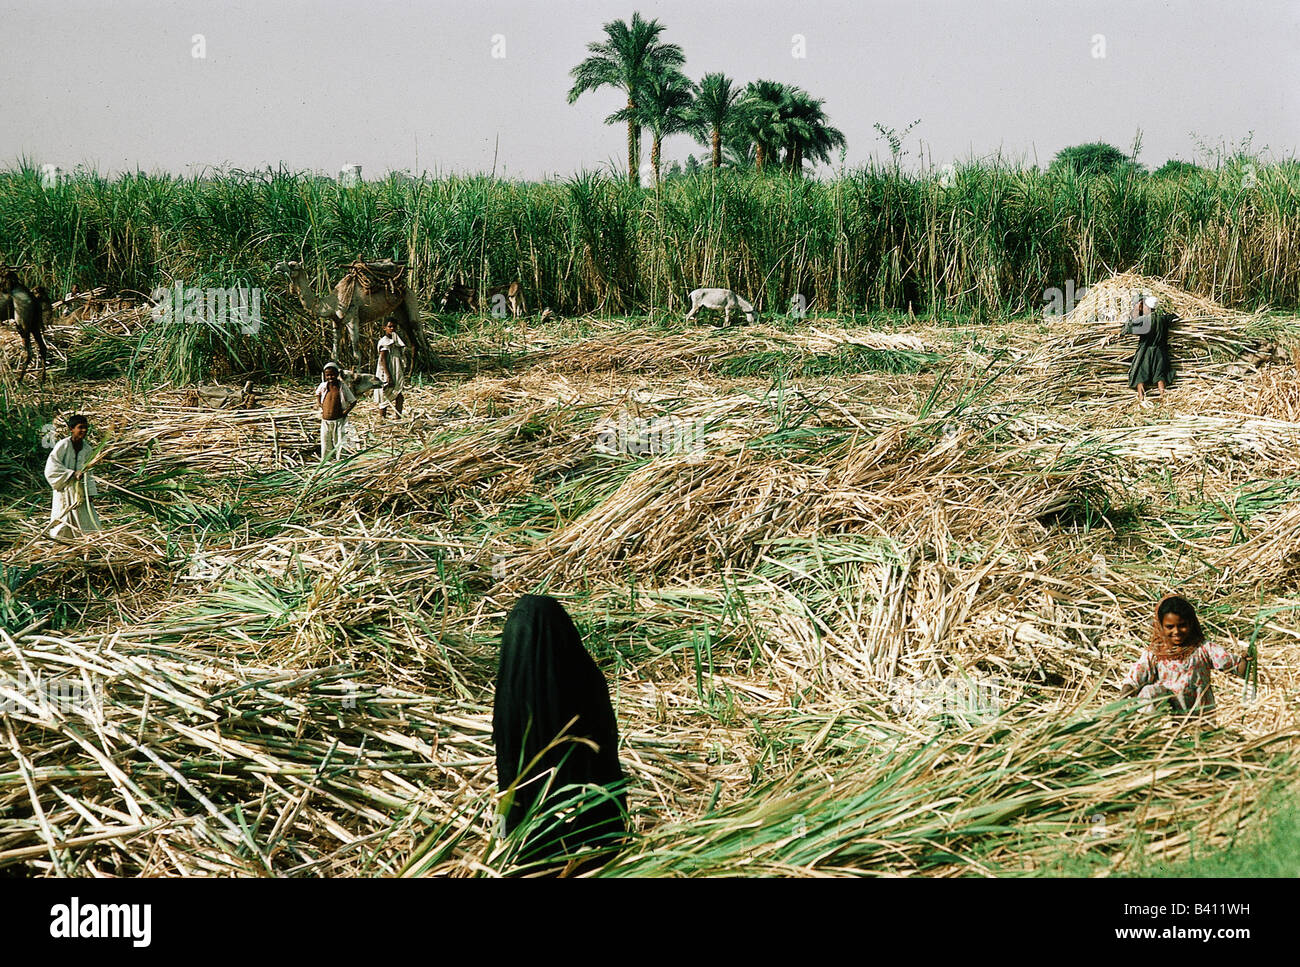 Geografia / viaggio, Egitto, persone, raccolto di canna da zucchero, donne e bambini al lavoro nel campo, agricoltori, agricoltura / agricoltura, , Foto Stock